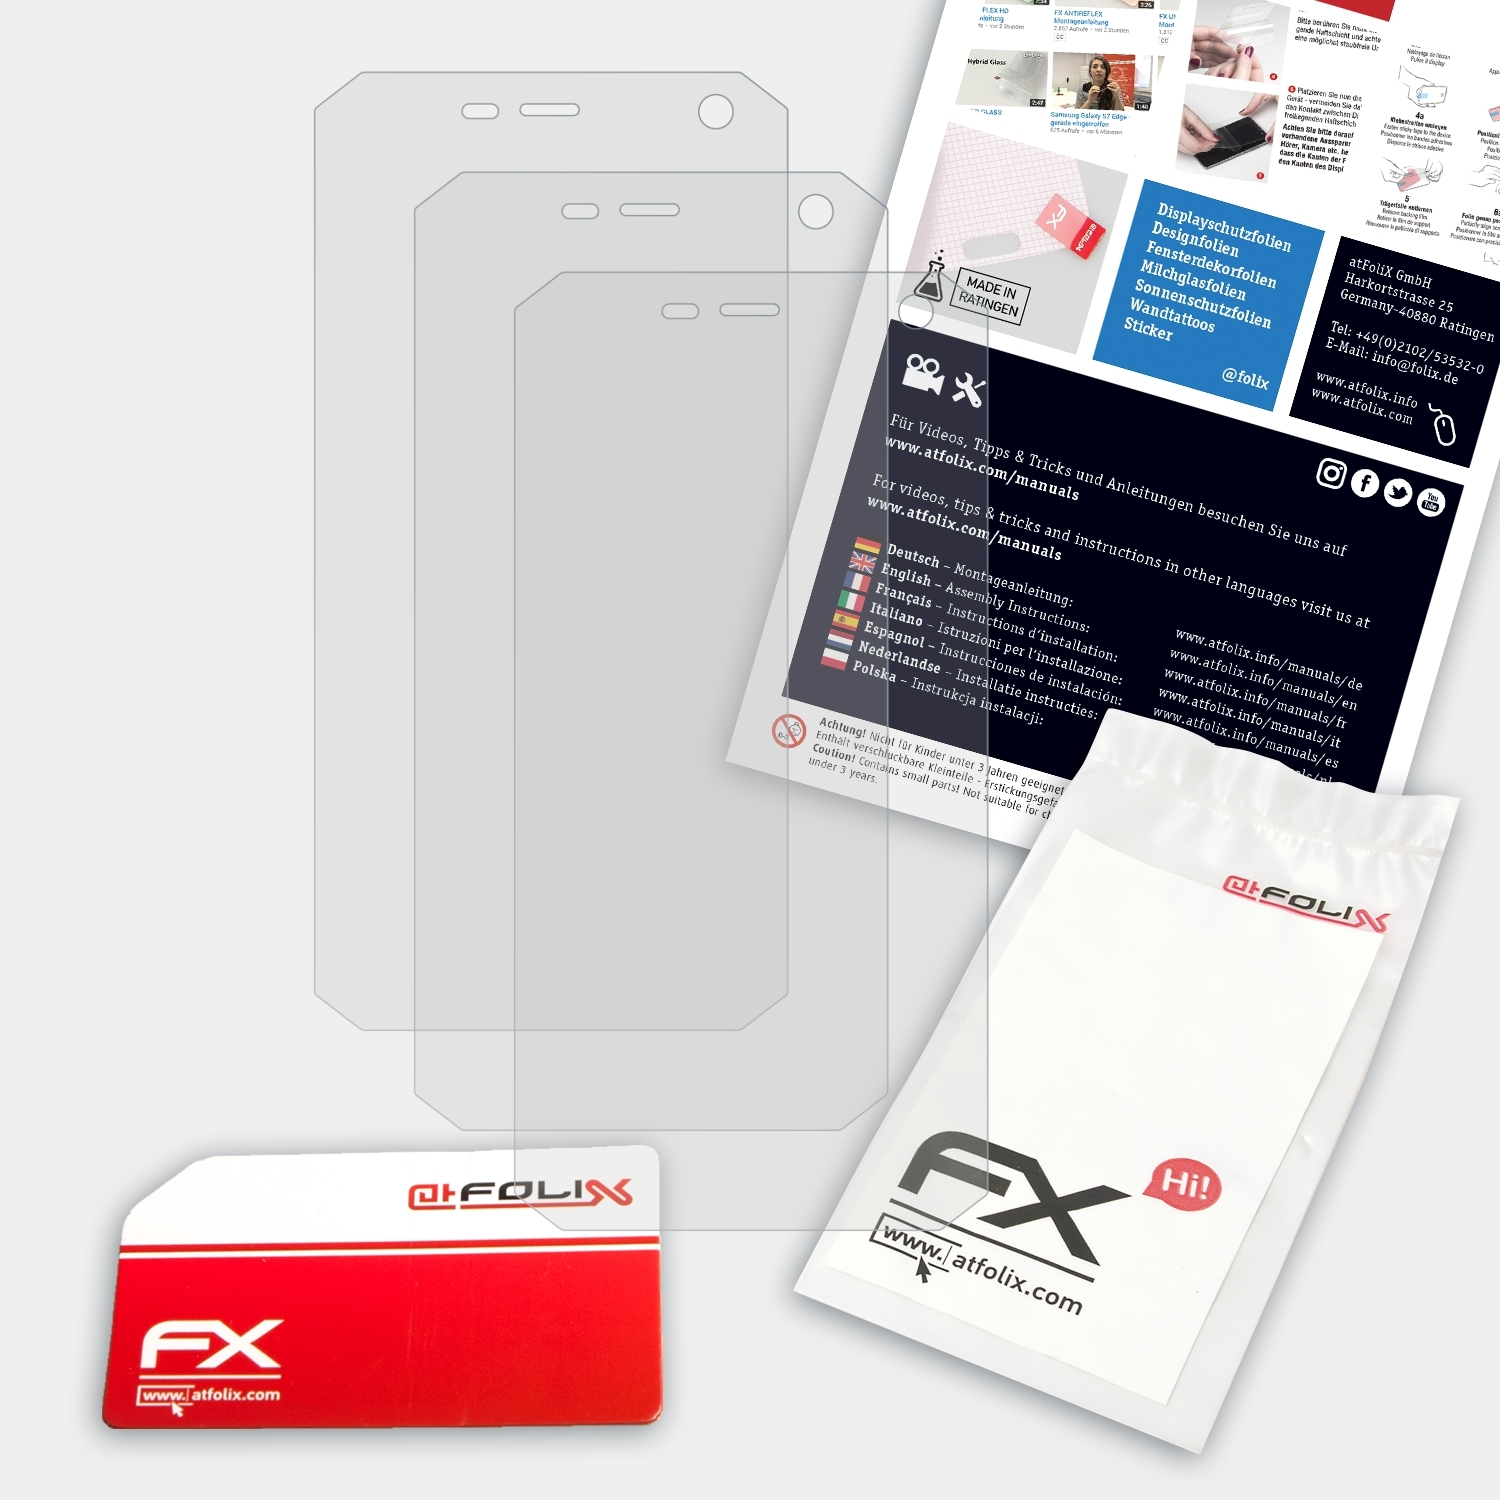 ATFOLIX 3x FX-Antireflex Displayschutz(für Beafon X5)